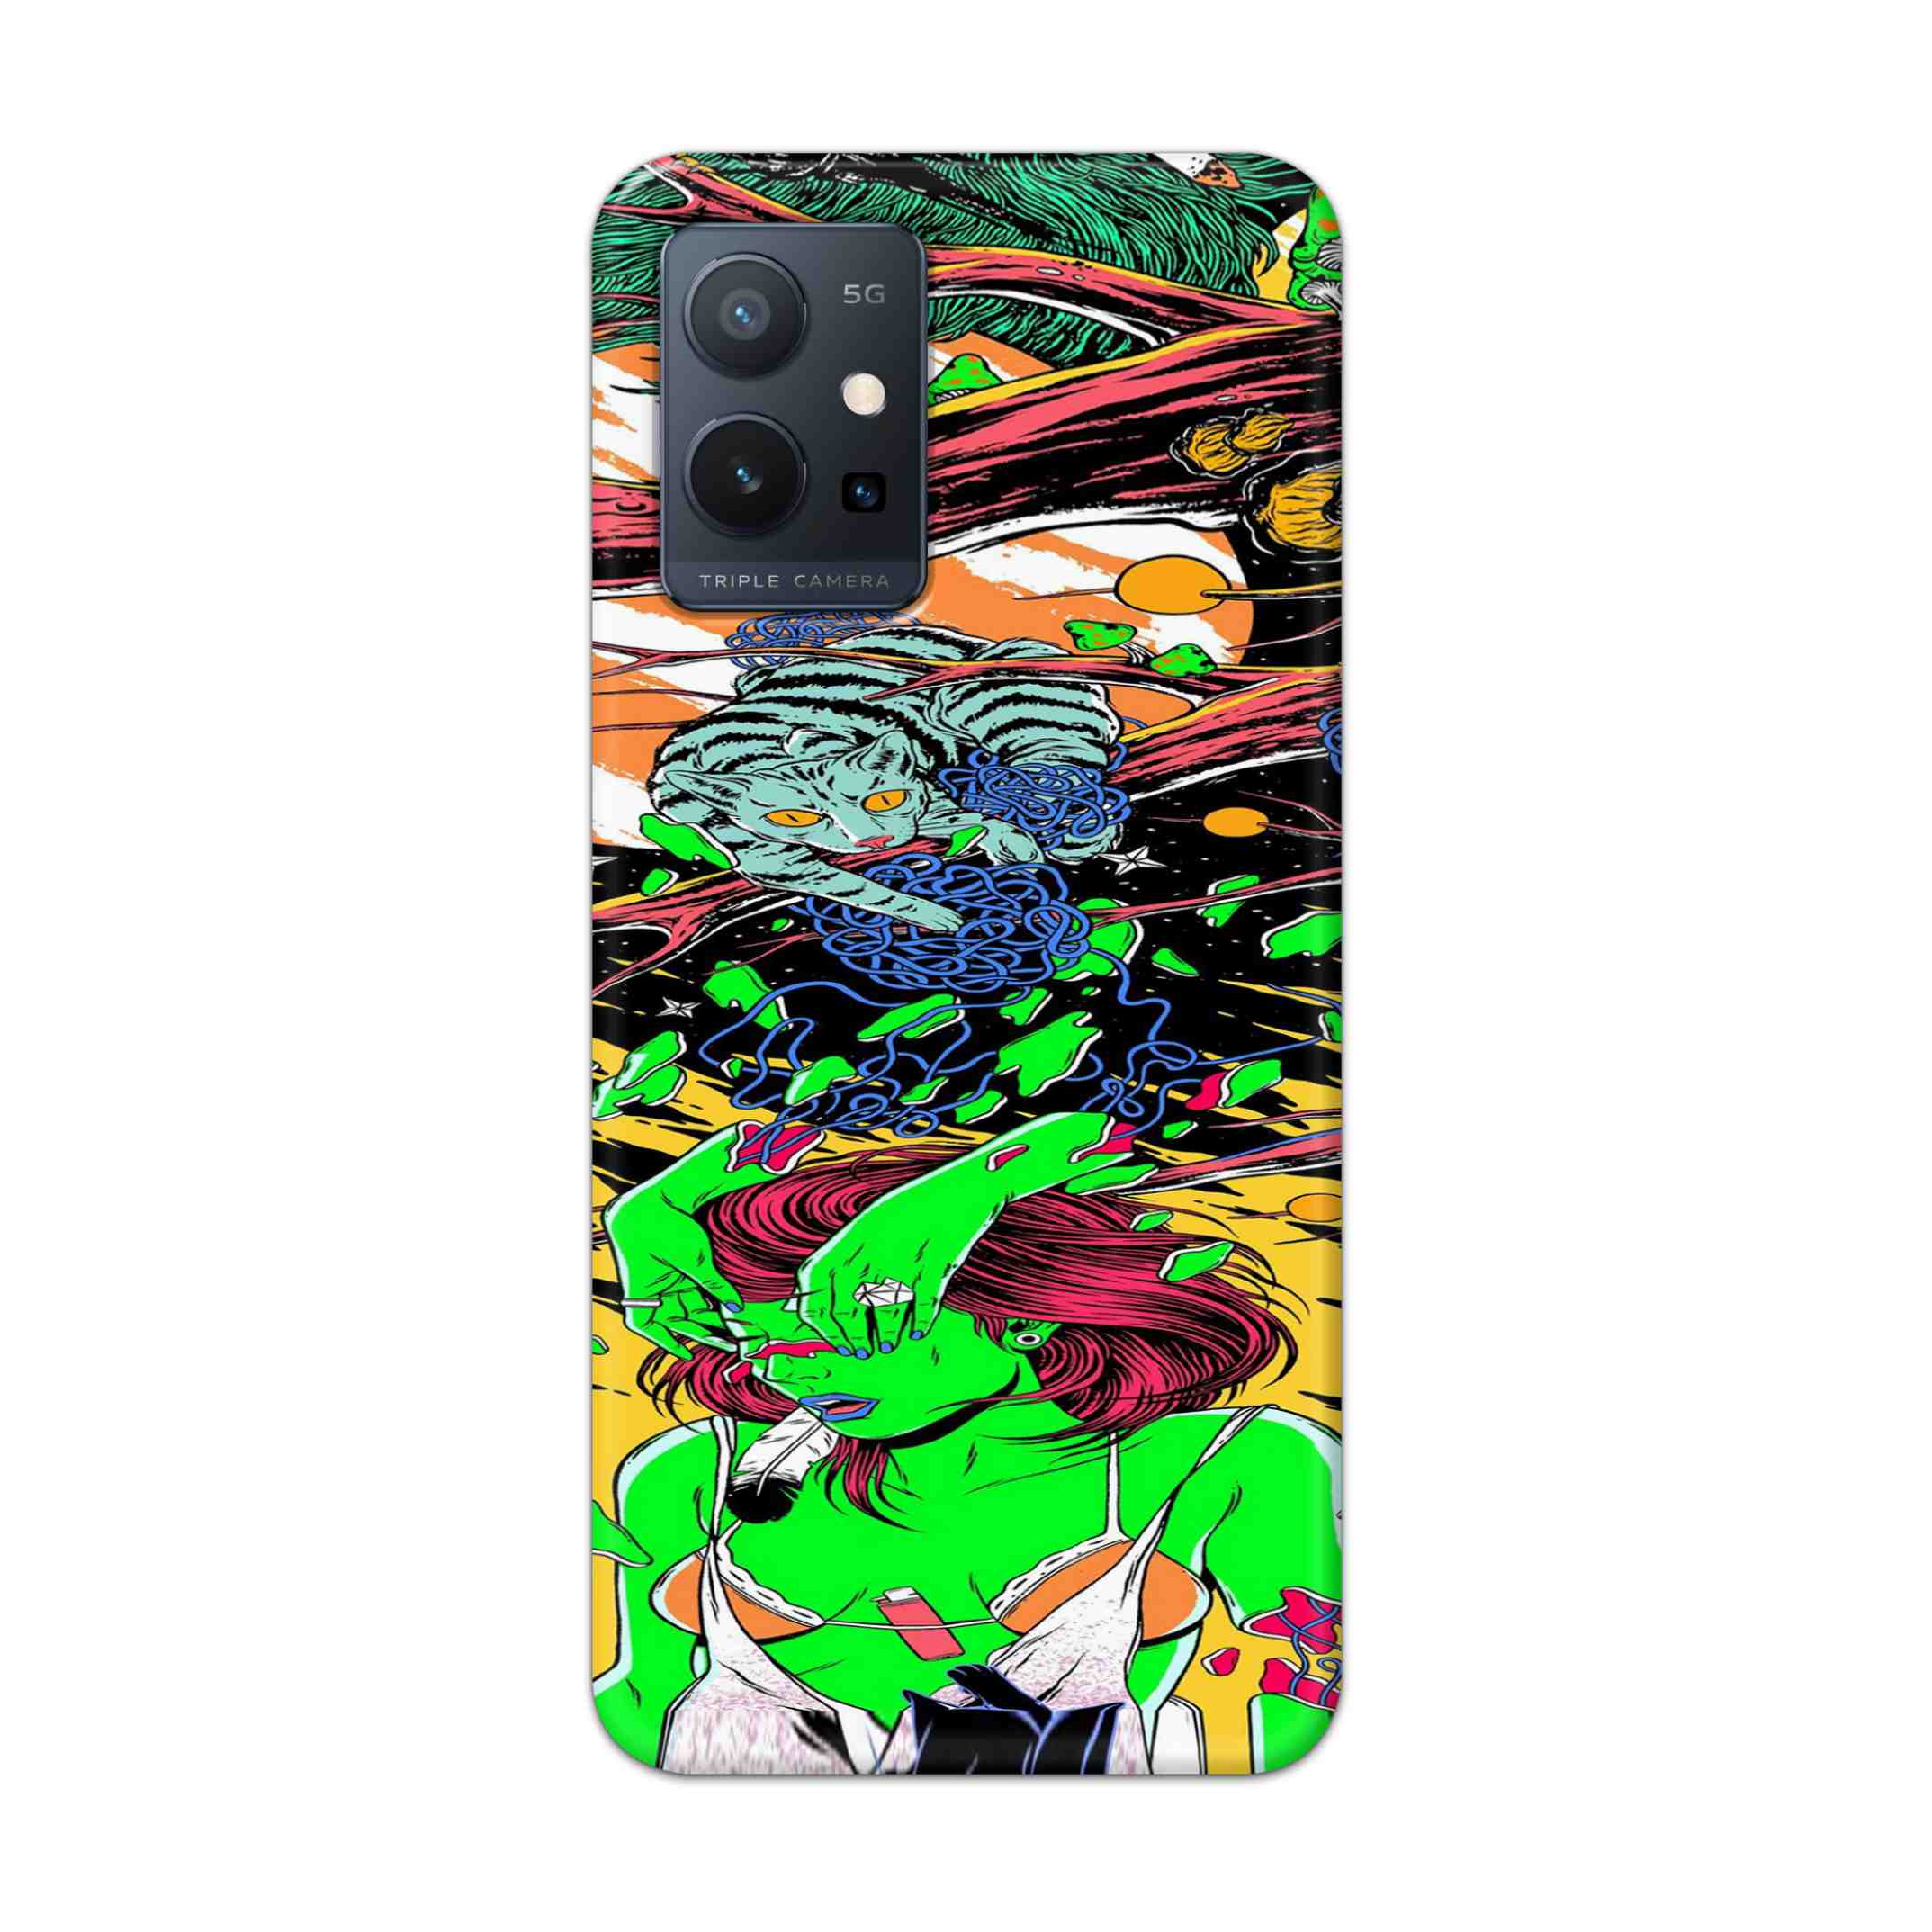 Buy Green Girl Art Hard Back Mobile Phone Case Cover For Vivo T1 5G Online